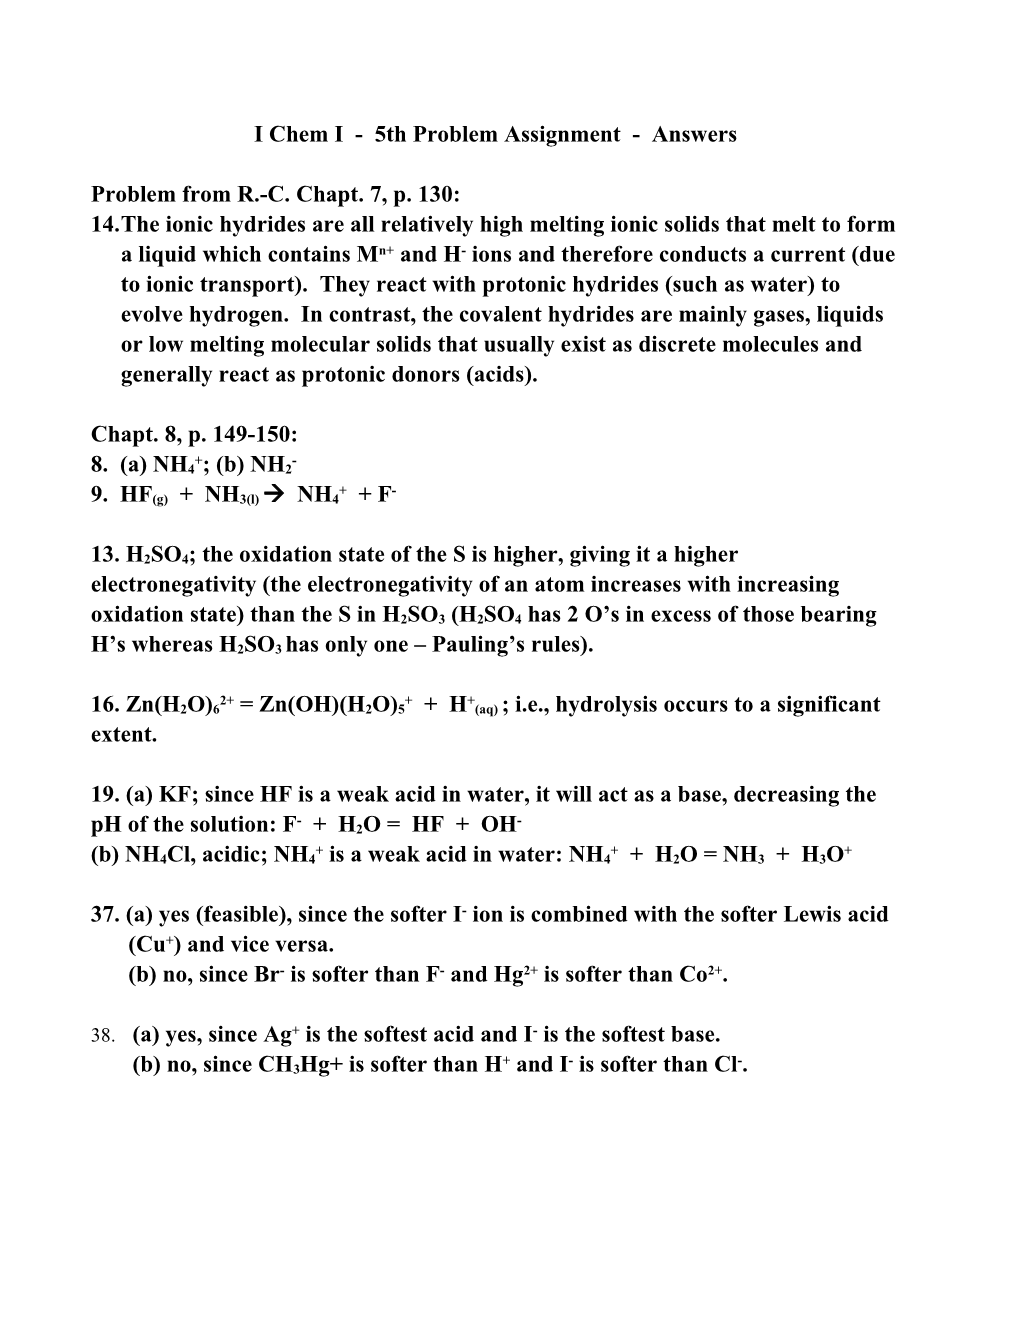 I Chem I - 2Nd Problem Assignment - January 23, 1998